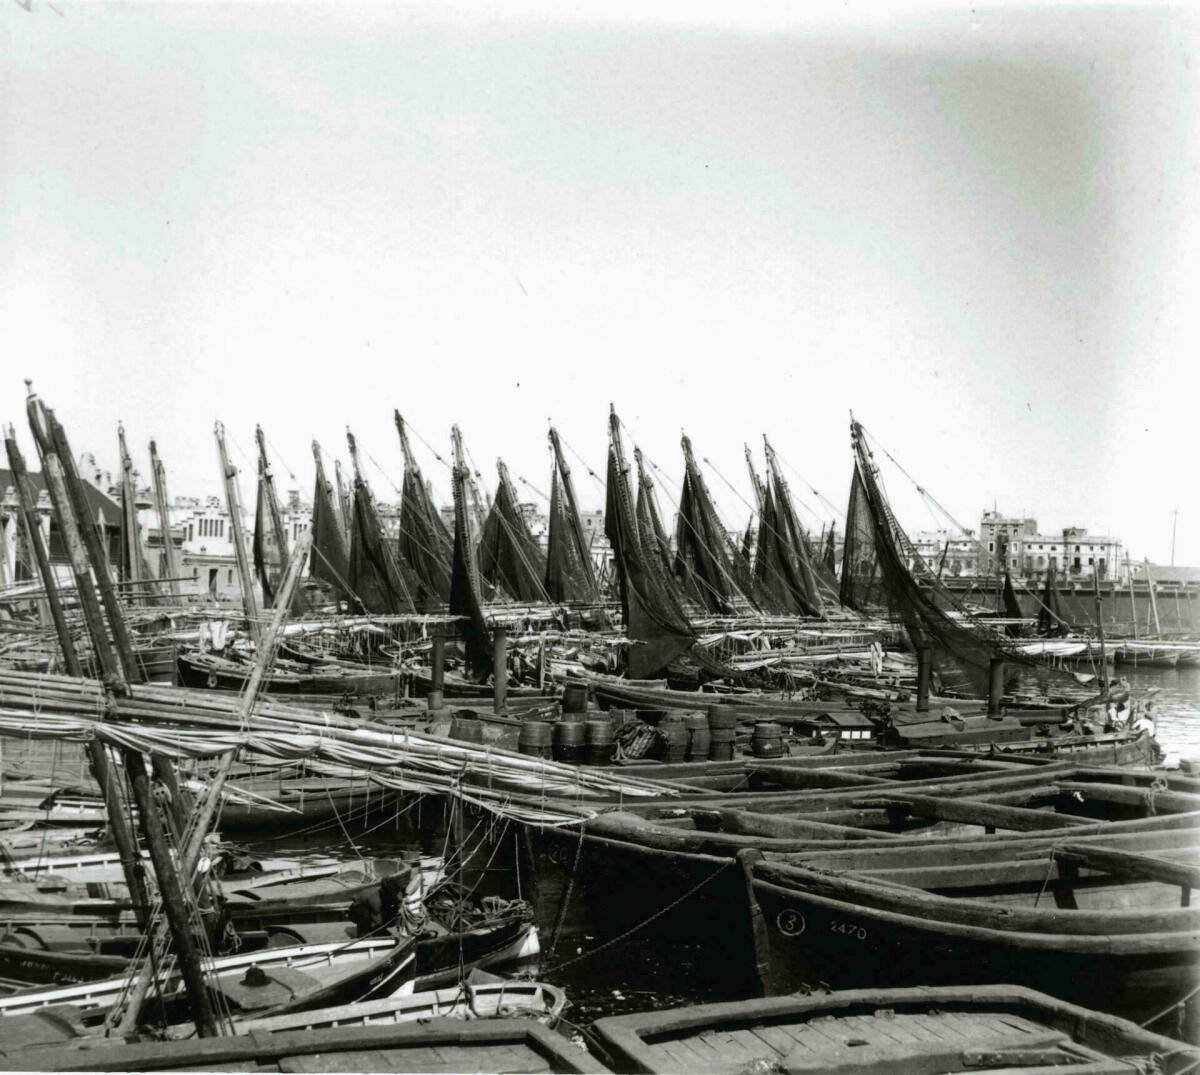 Esteve Puig. Barques de vela al port, c. 1915